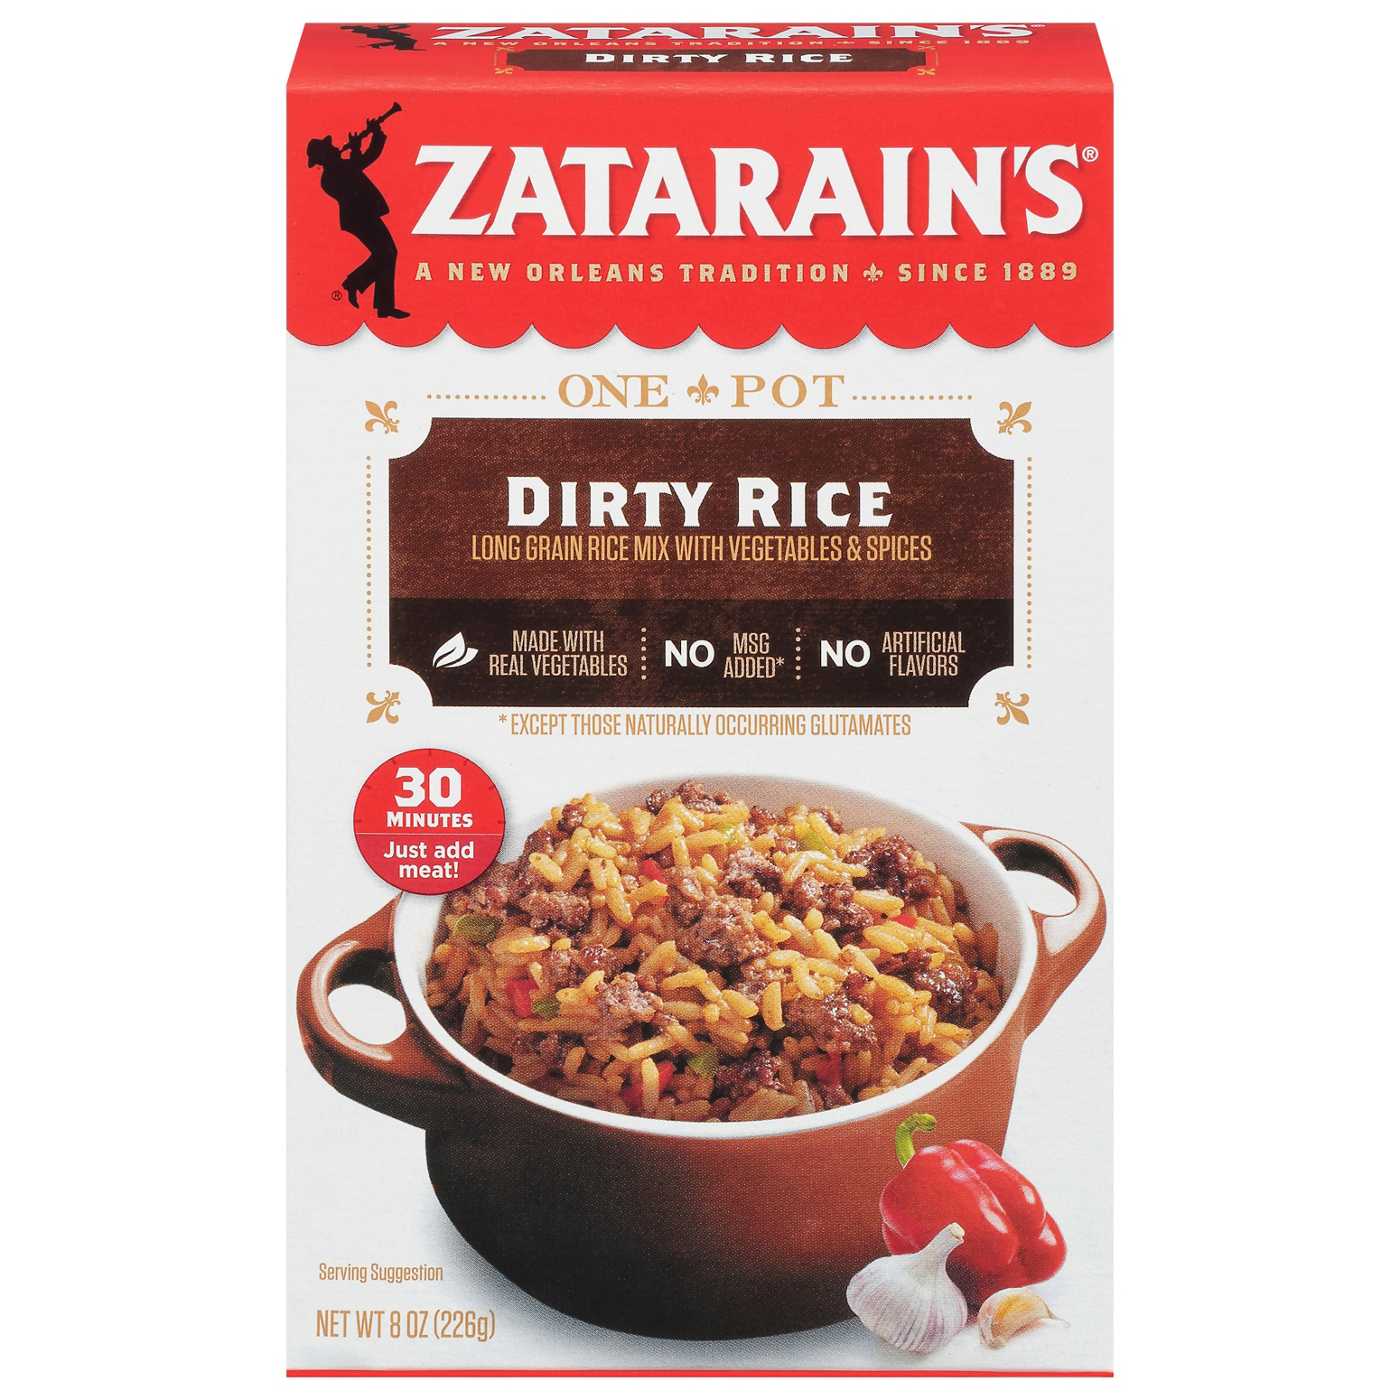 Zatarain's Dirty Rice Dinner Mix; image 1 of 9